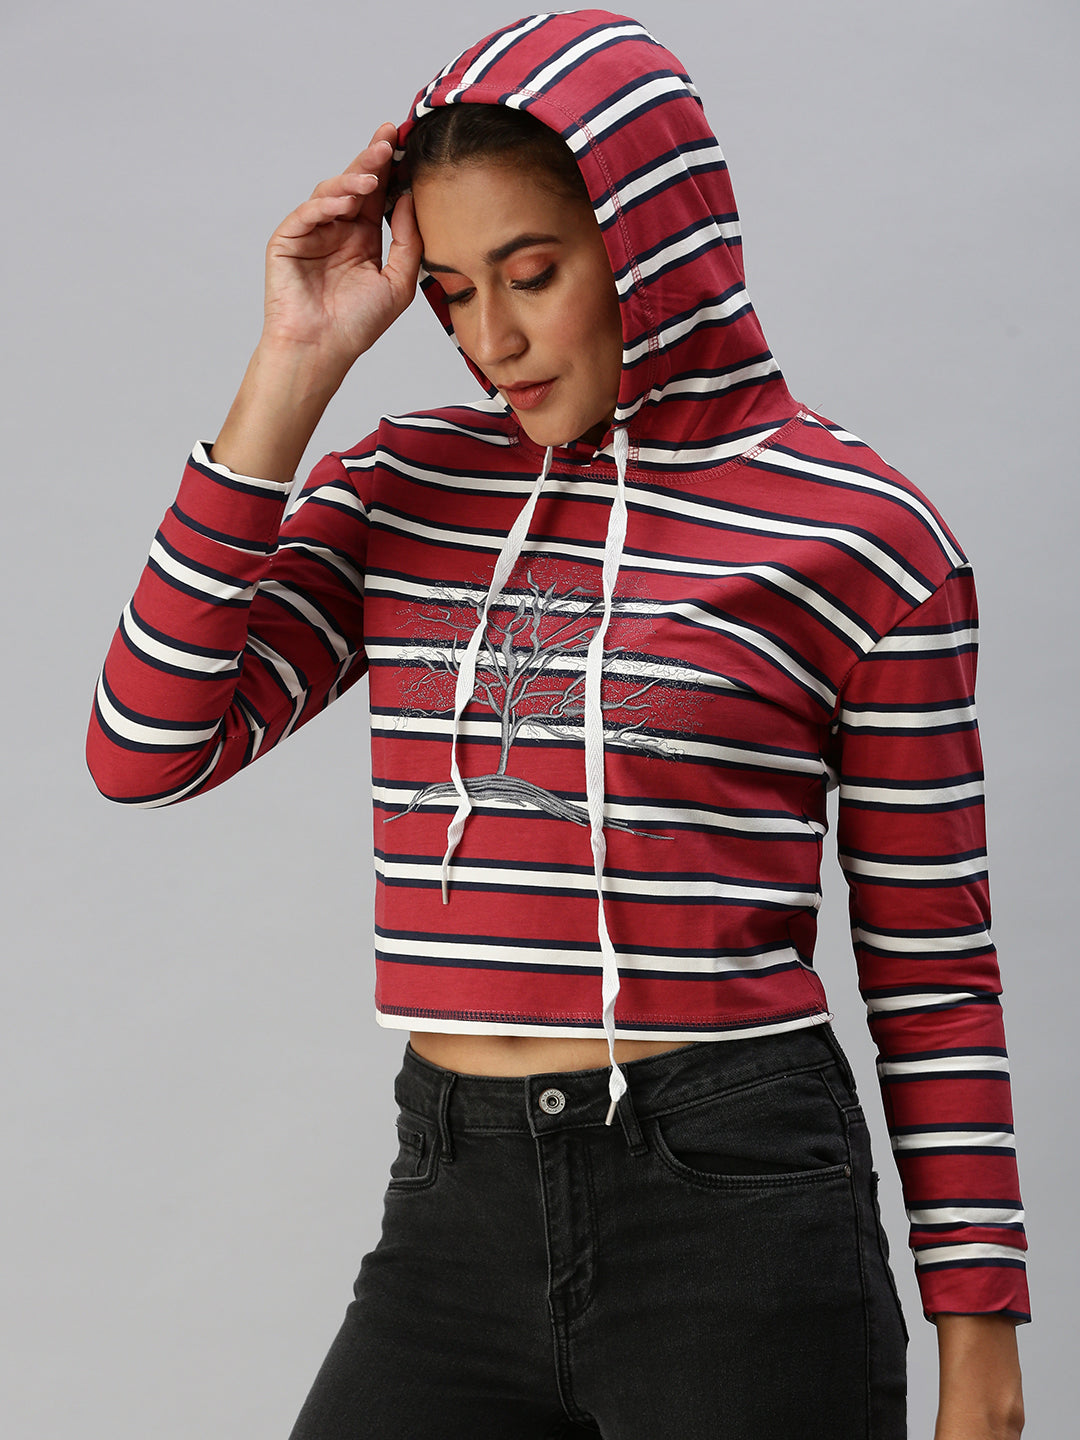 Women's Red Striped Crop Pullover Sweatshirt